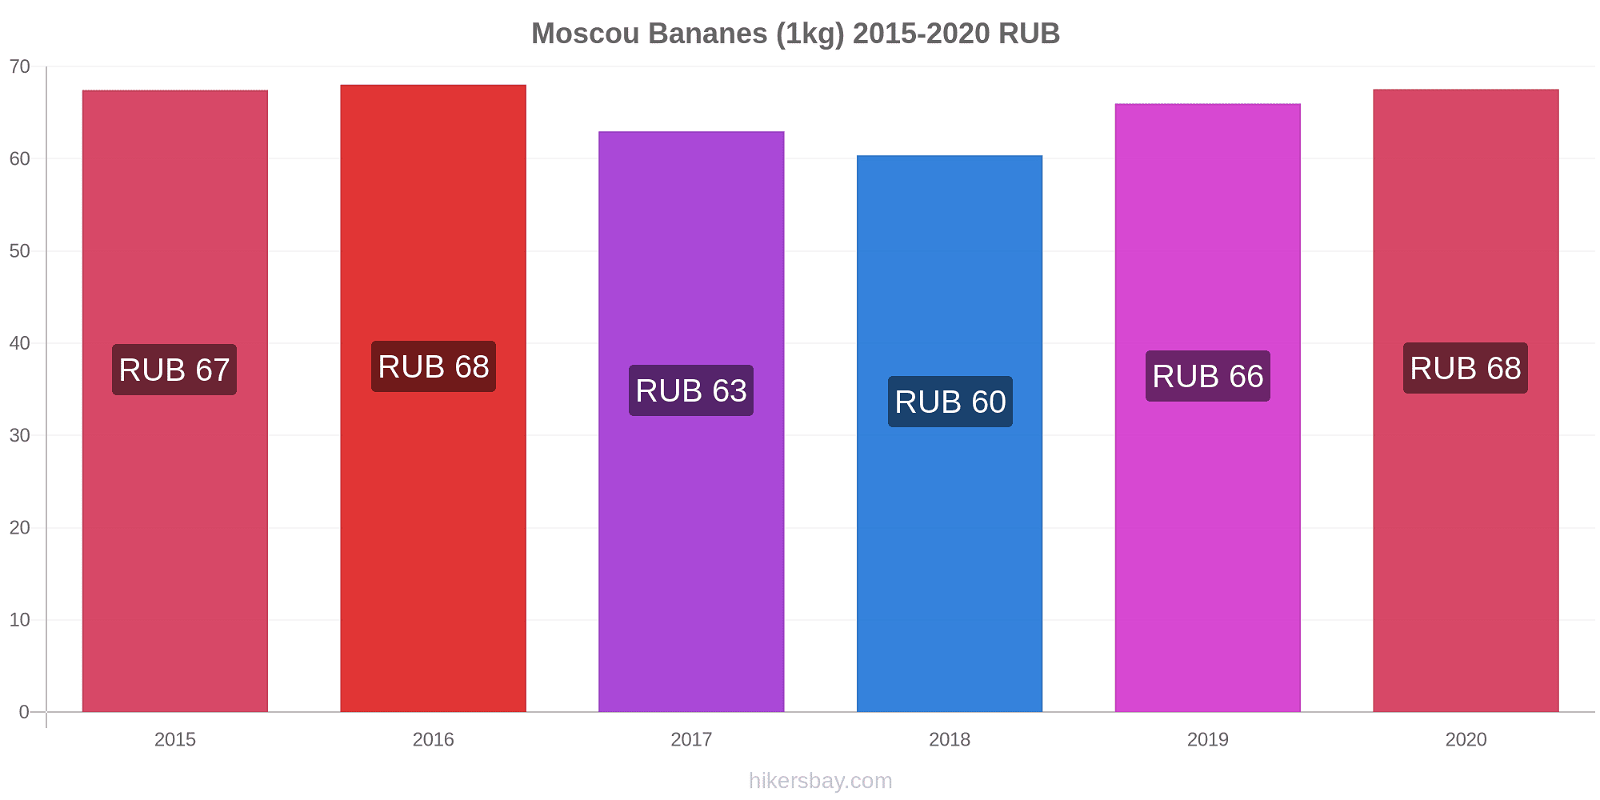 Moscou changements de prix Bananes (1kg) hikersbay.com